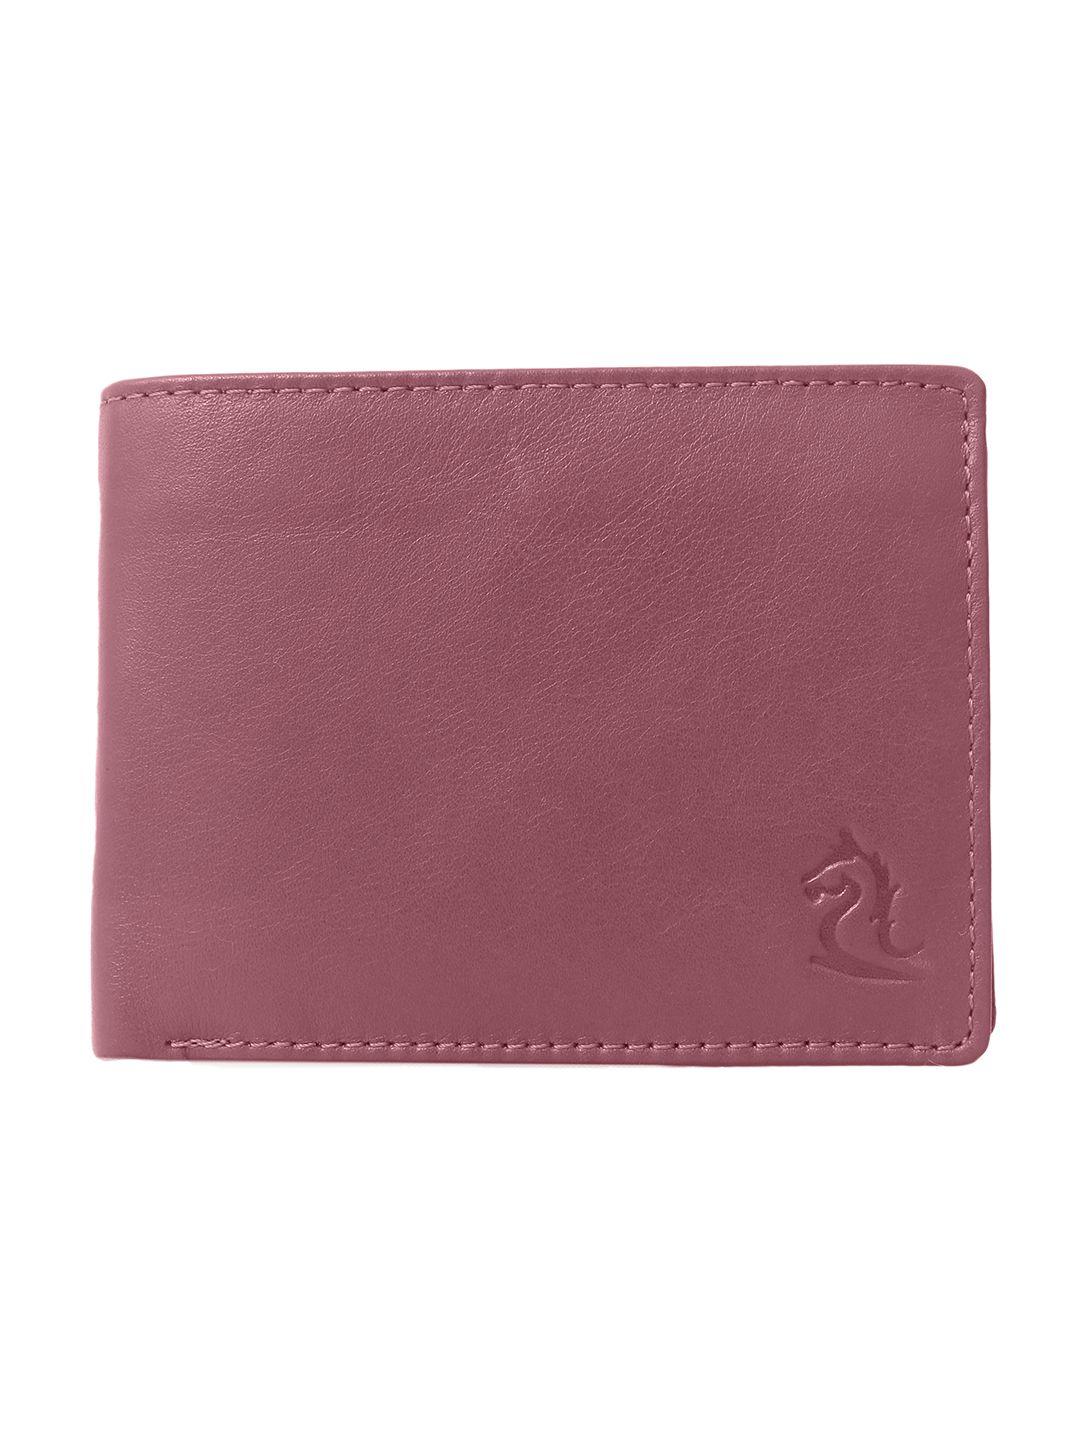 kara men maroon two fold leather wallet